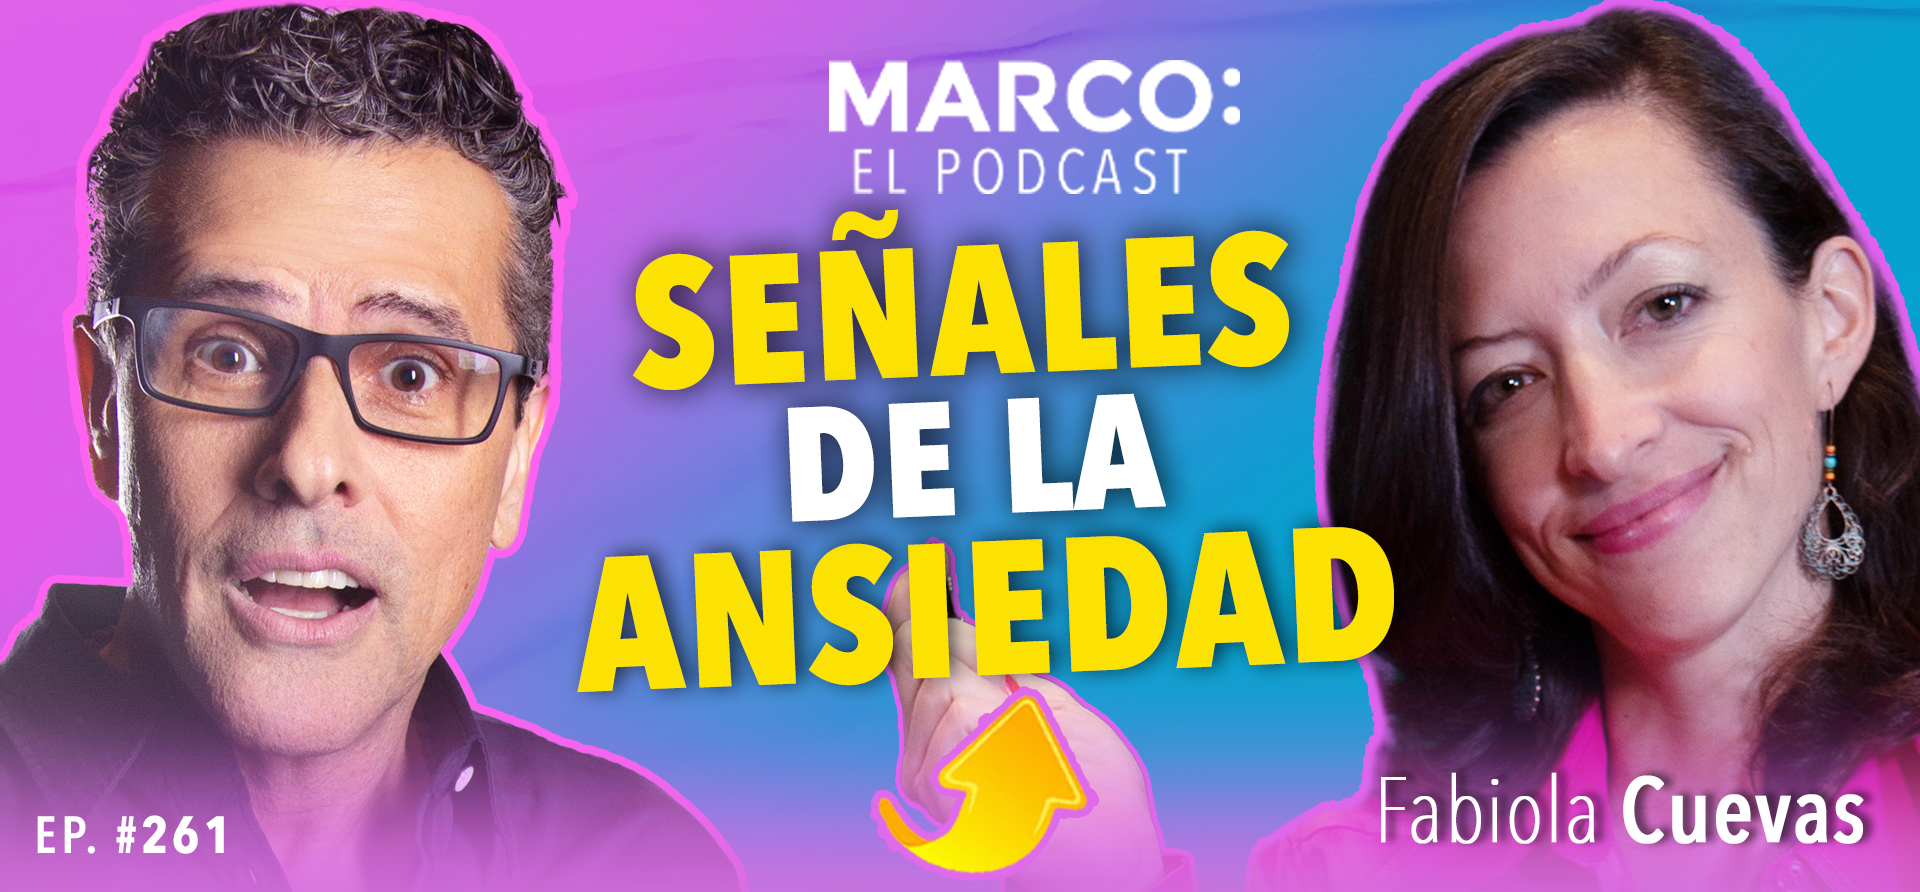 Señales de ansiedad Marco El Podcast